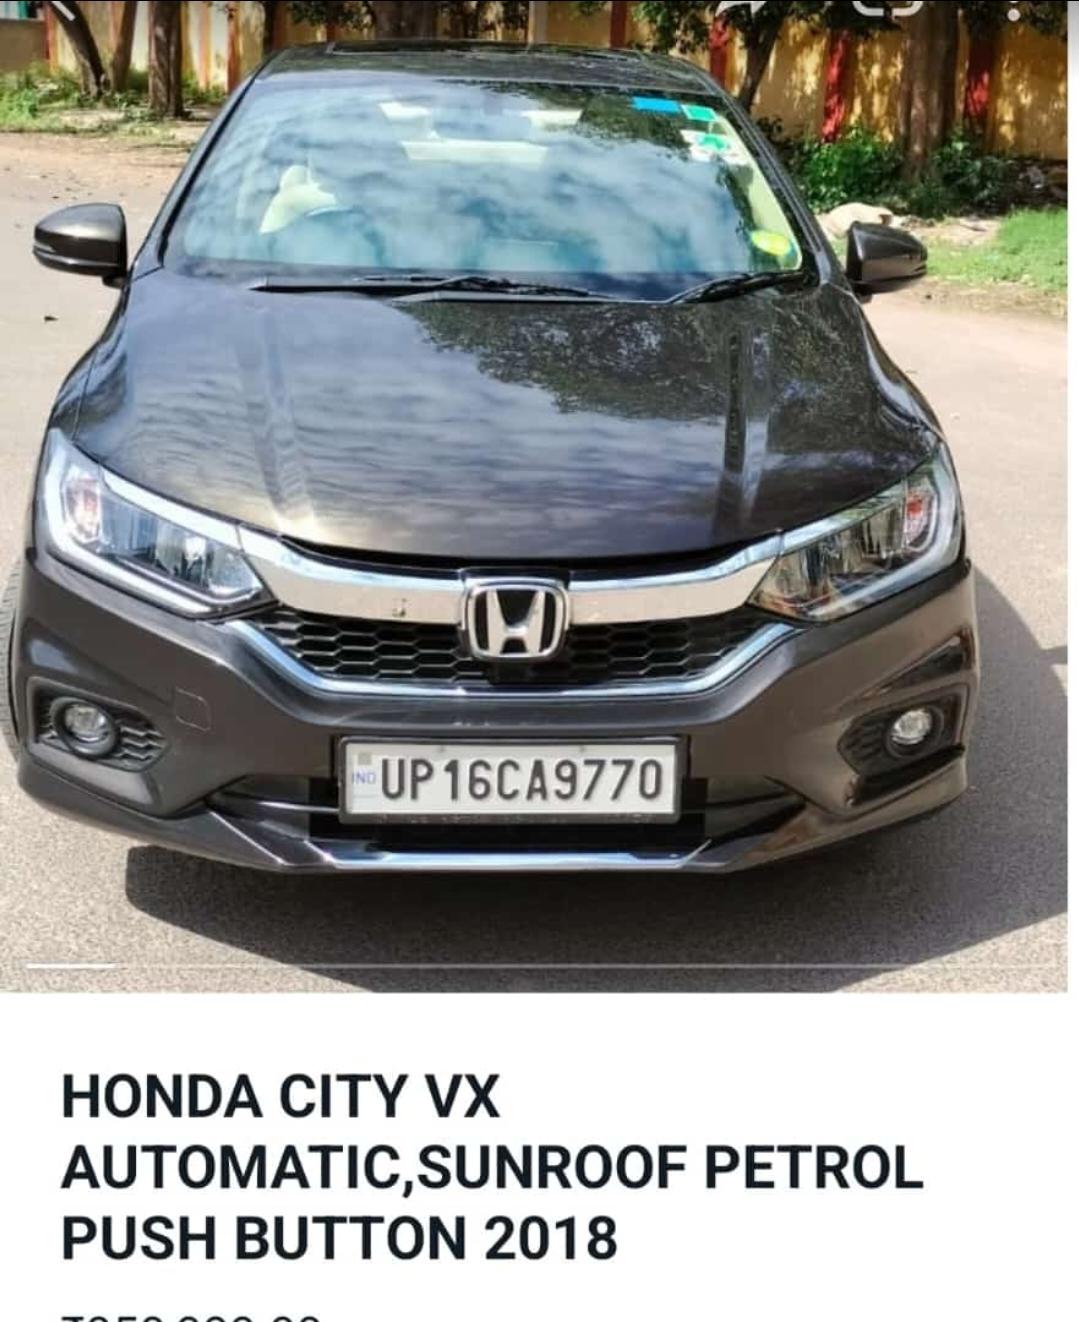 Used 2018 Honda City, Defence Colony, New Delhi